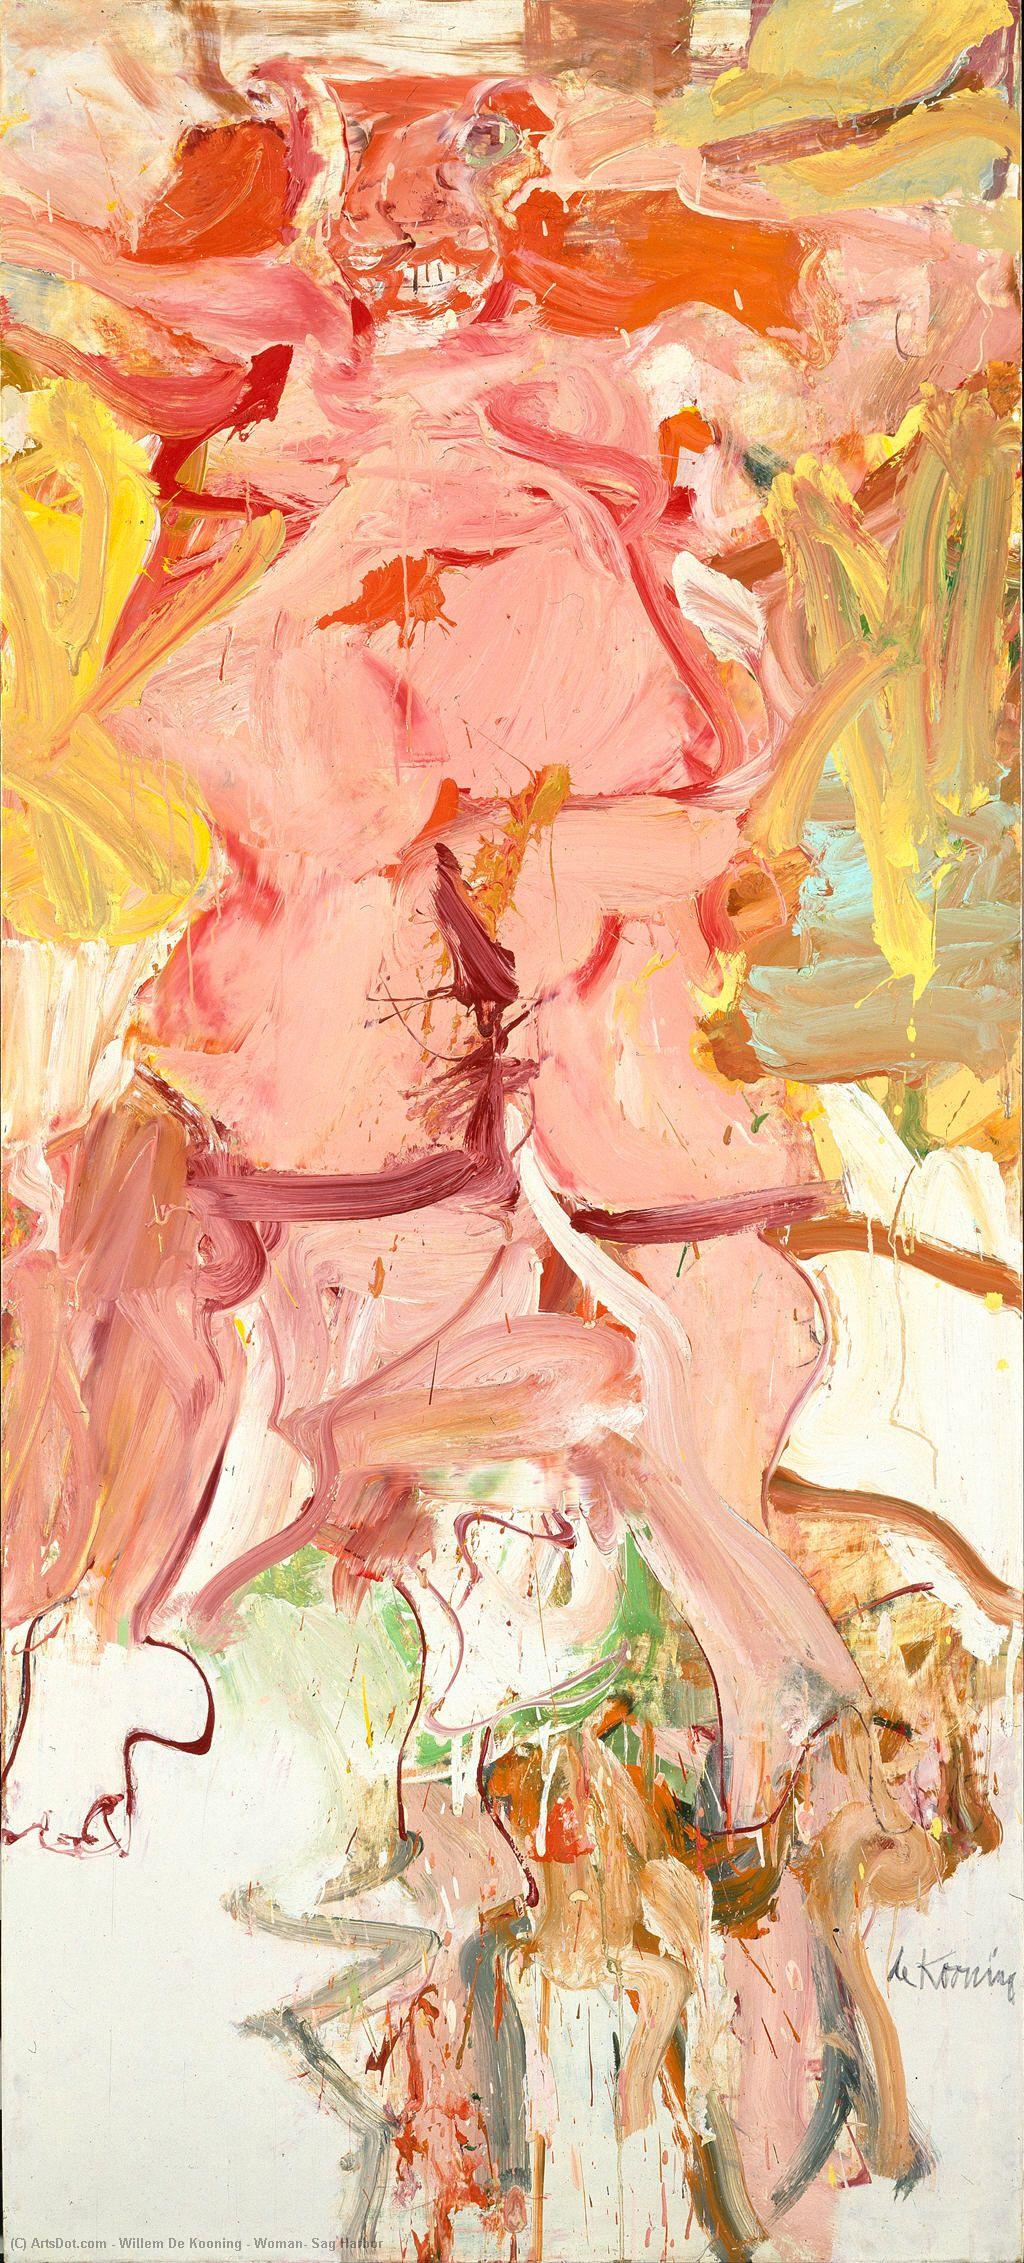 Achat Réplique De Peinture Femme, Sag Harbor, 1964 de Willem De Kooning (Inspiré par) (1904-1997, Netherlands) | ArtsDot.com